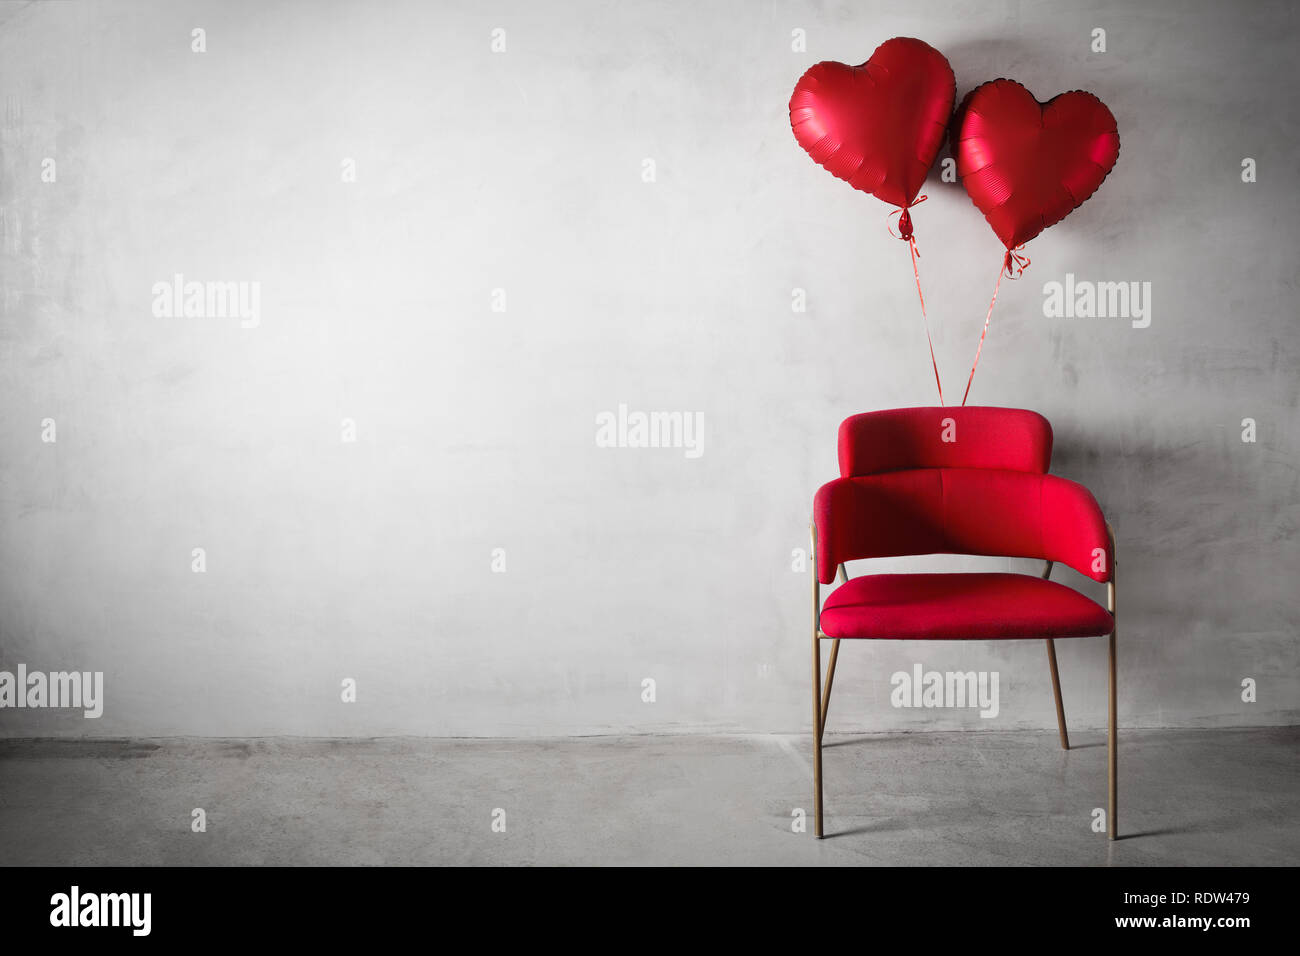 Silla Roja en forma de corazón con globos flotando sobre el muro de hormigón de fondo. Foto de stock